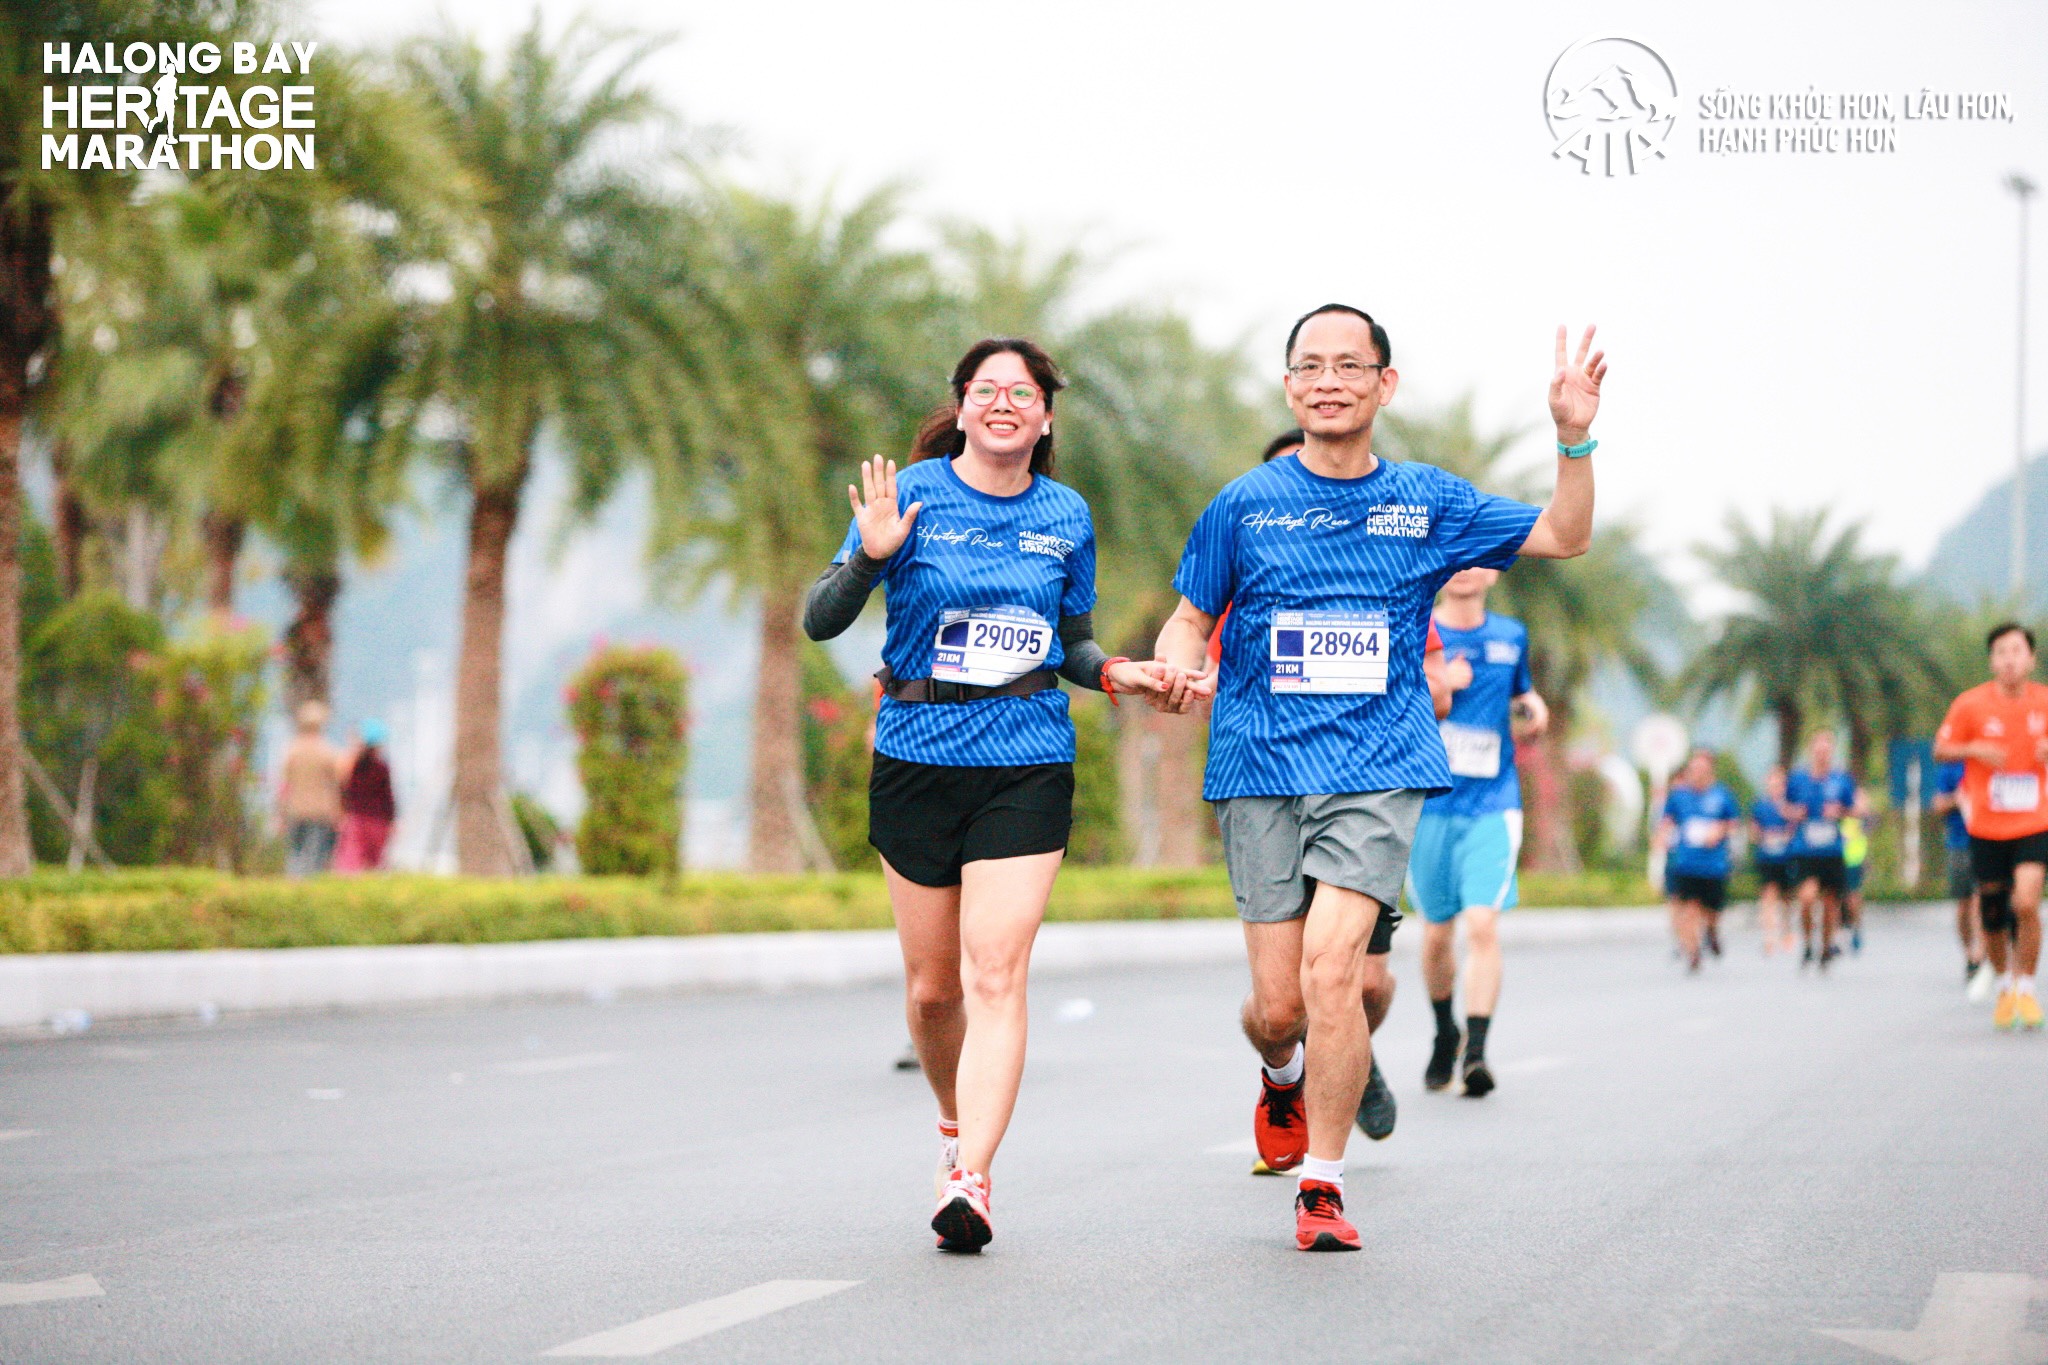 Đặng Anh Quyết và Thái Thị Hồng vô địch giải Halong Bay Heritage Marathon 2022